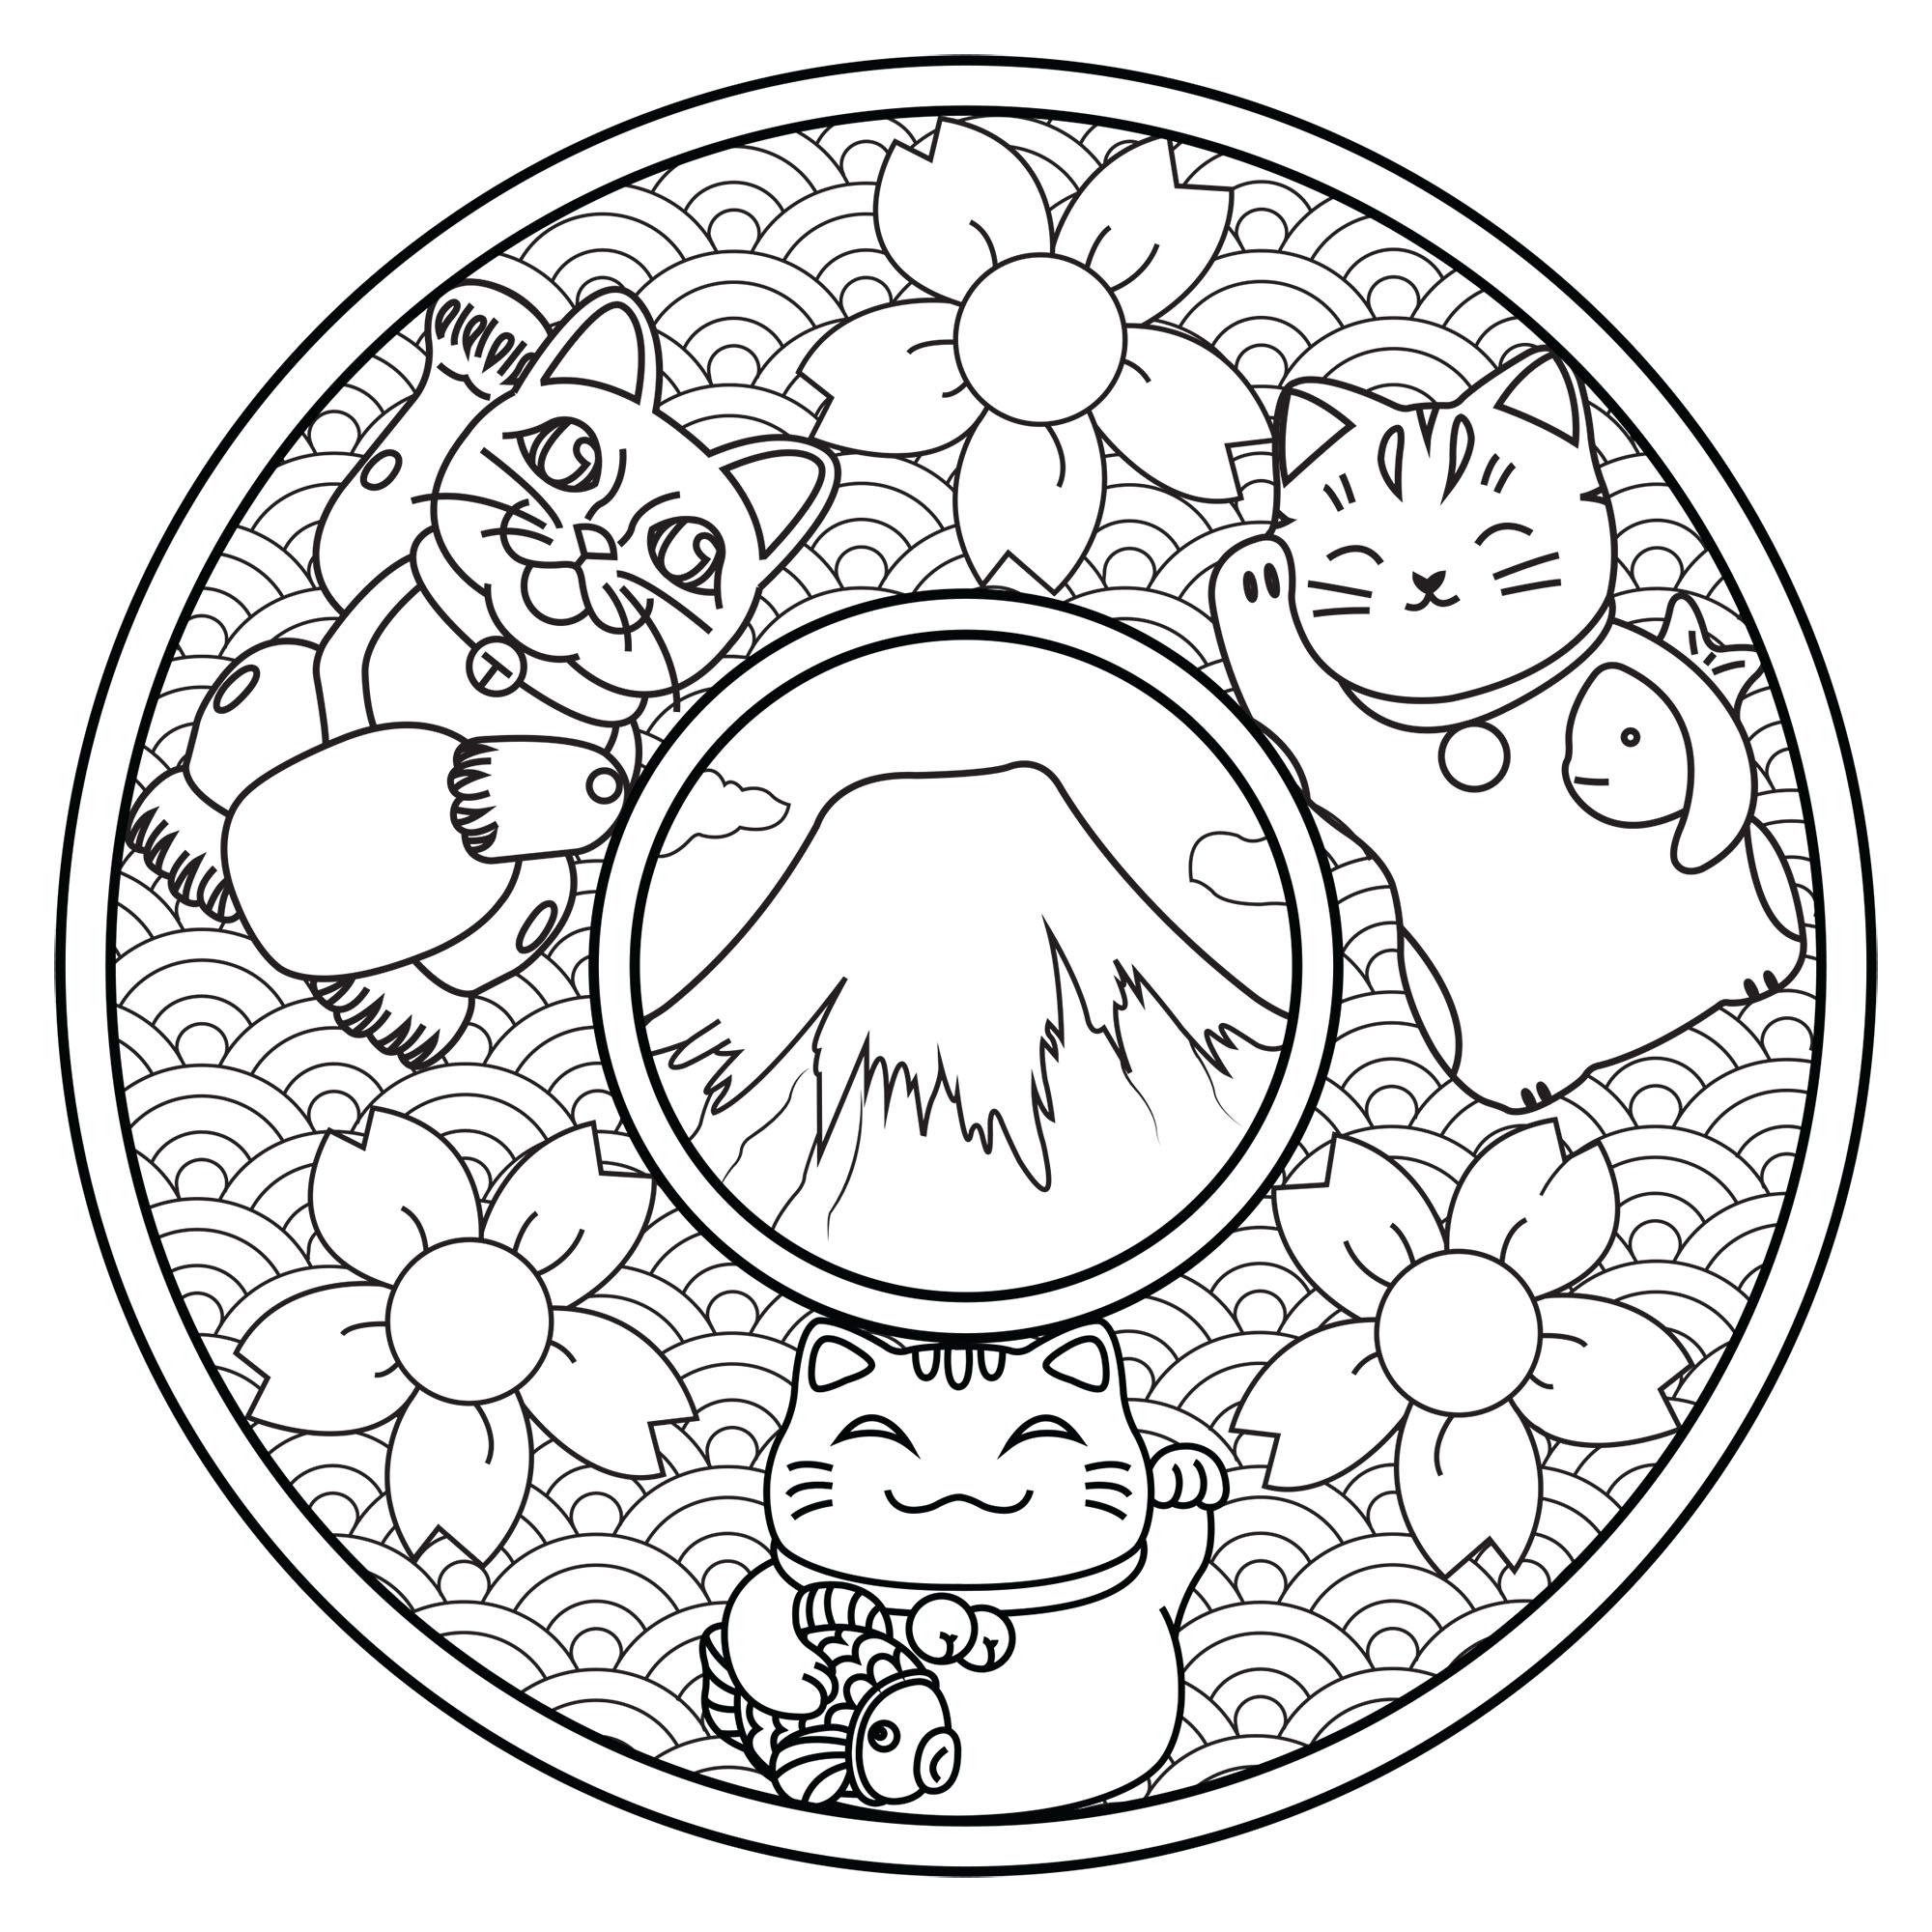 Colorea estos tres simpáticos gatos en este mandala inspirado en Japón: Monte Fuji, flores de cerezo, olas...